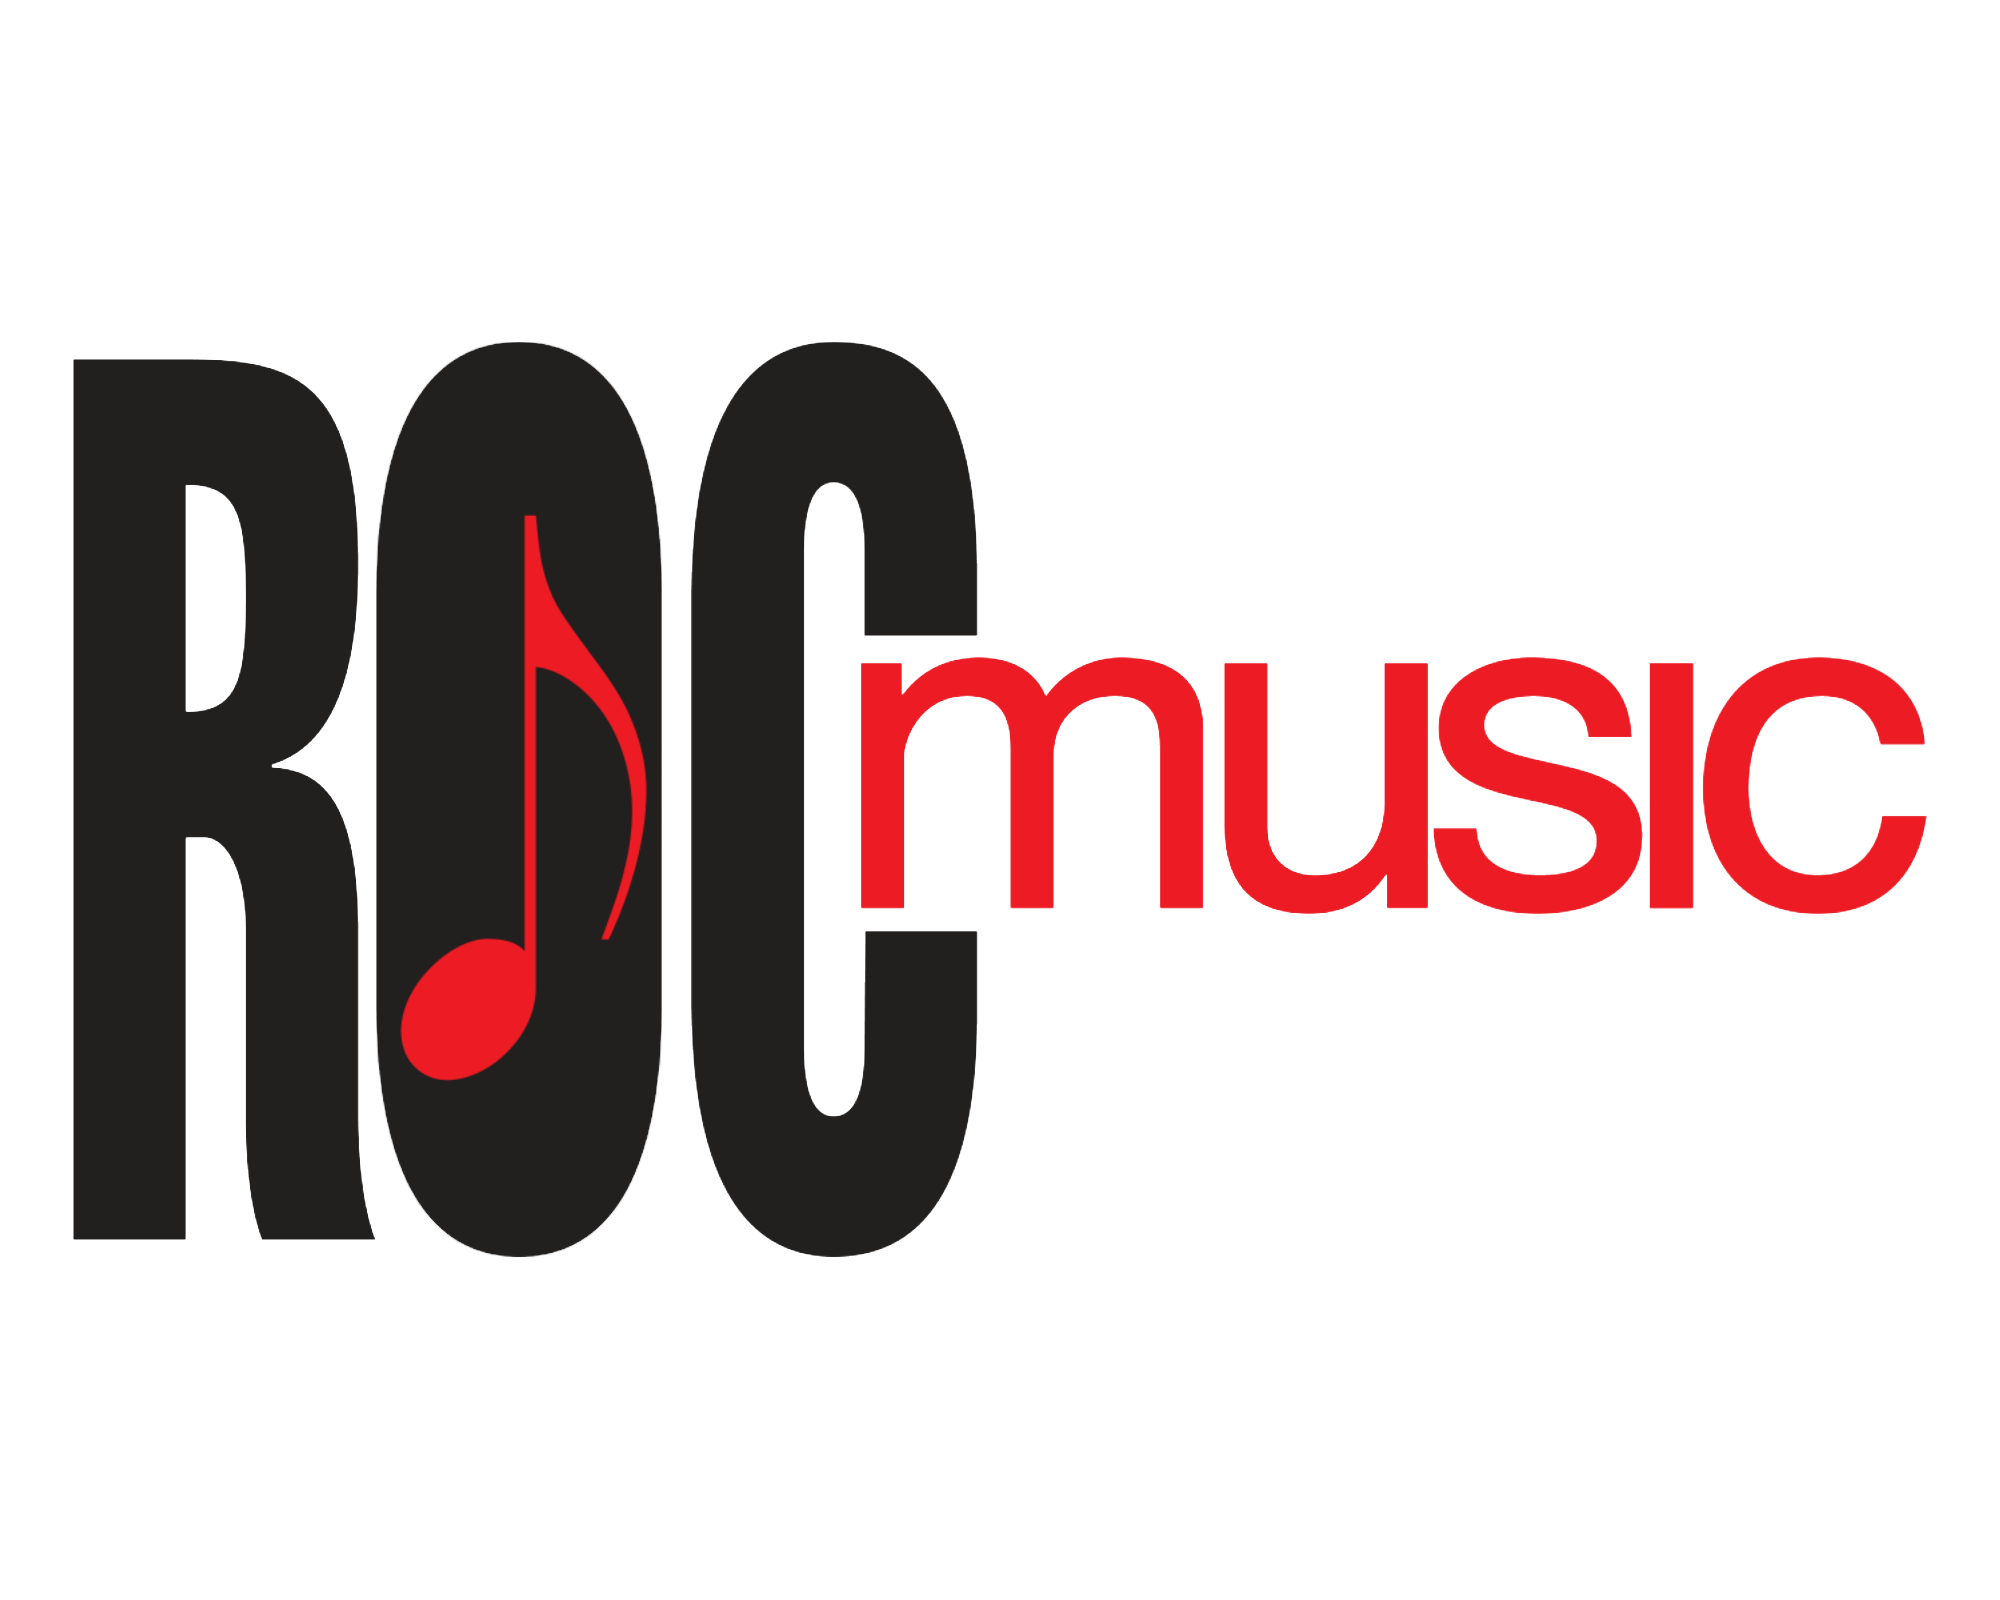 BT-ROCmusic-transparent-logo.png